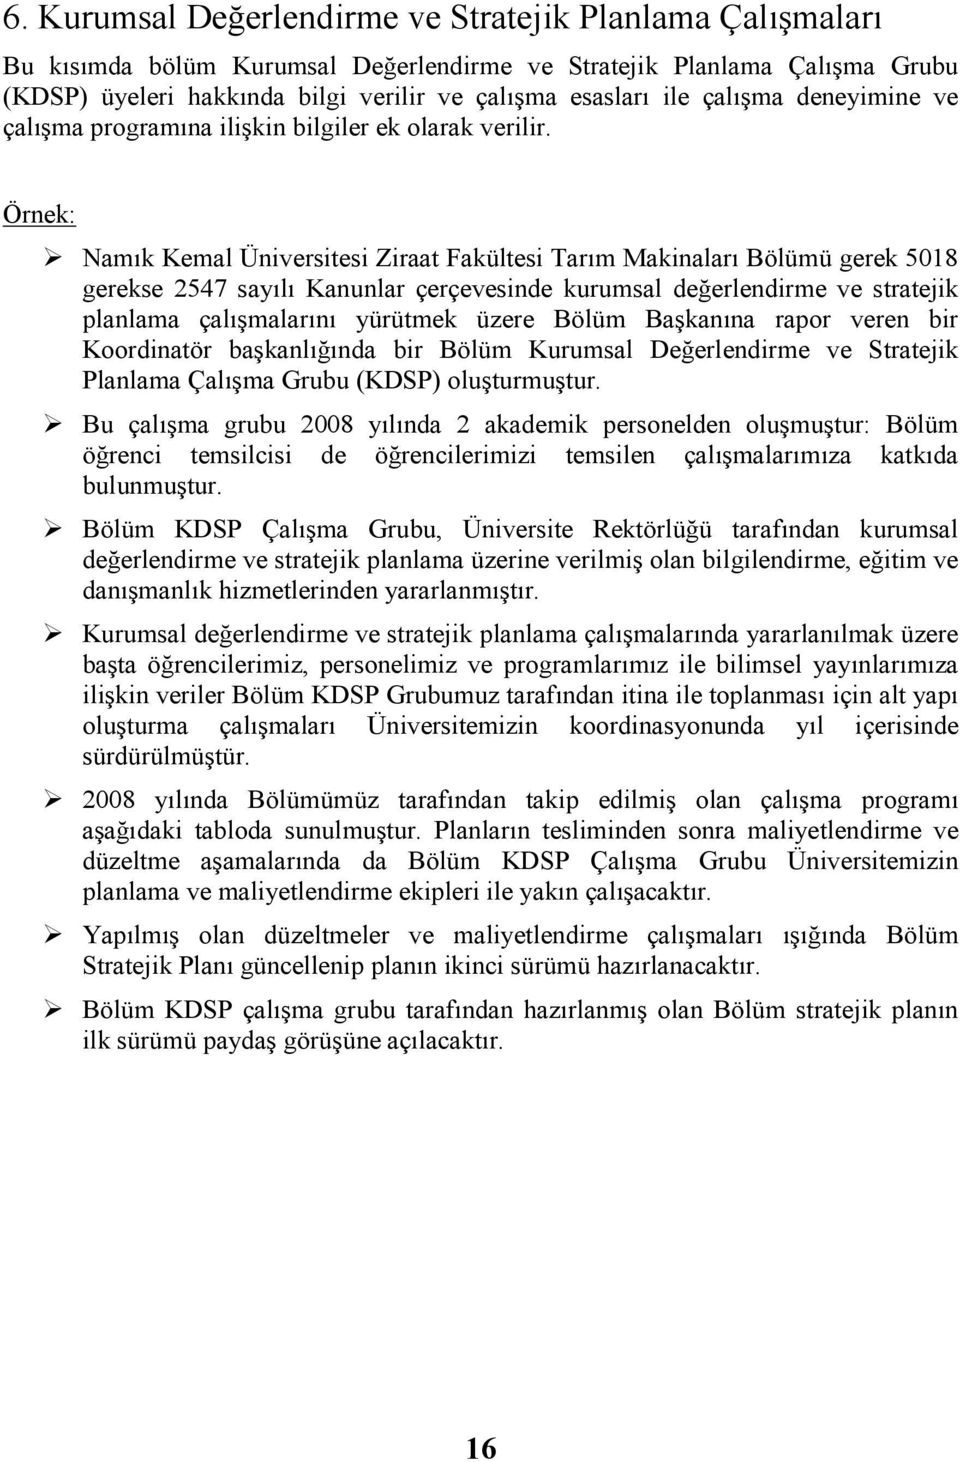 Örnek: Namık Kemal Üniversitesi Ziraat Fakültesi Tarım Makinaları Bölümü gerek 5018 gerekse 2547 sa Kanunlar çerçevesinde kurumsal değerlendirme ve stratejik planlama çalışmalarını yürütmek üzere